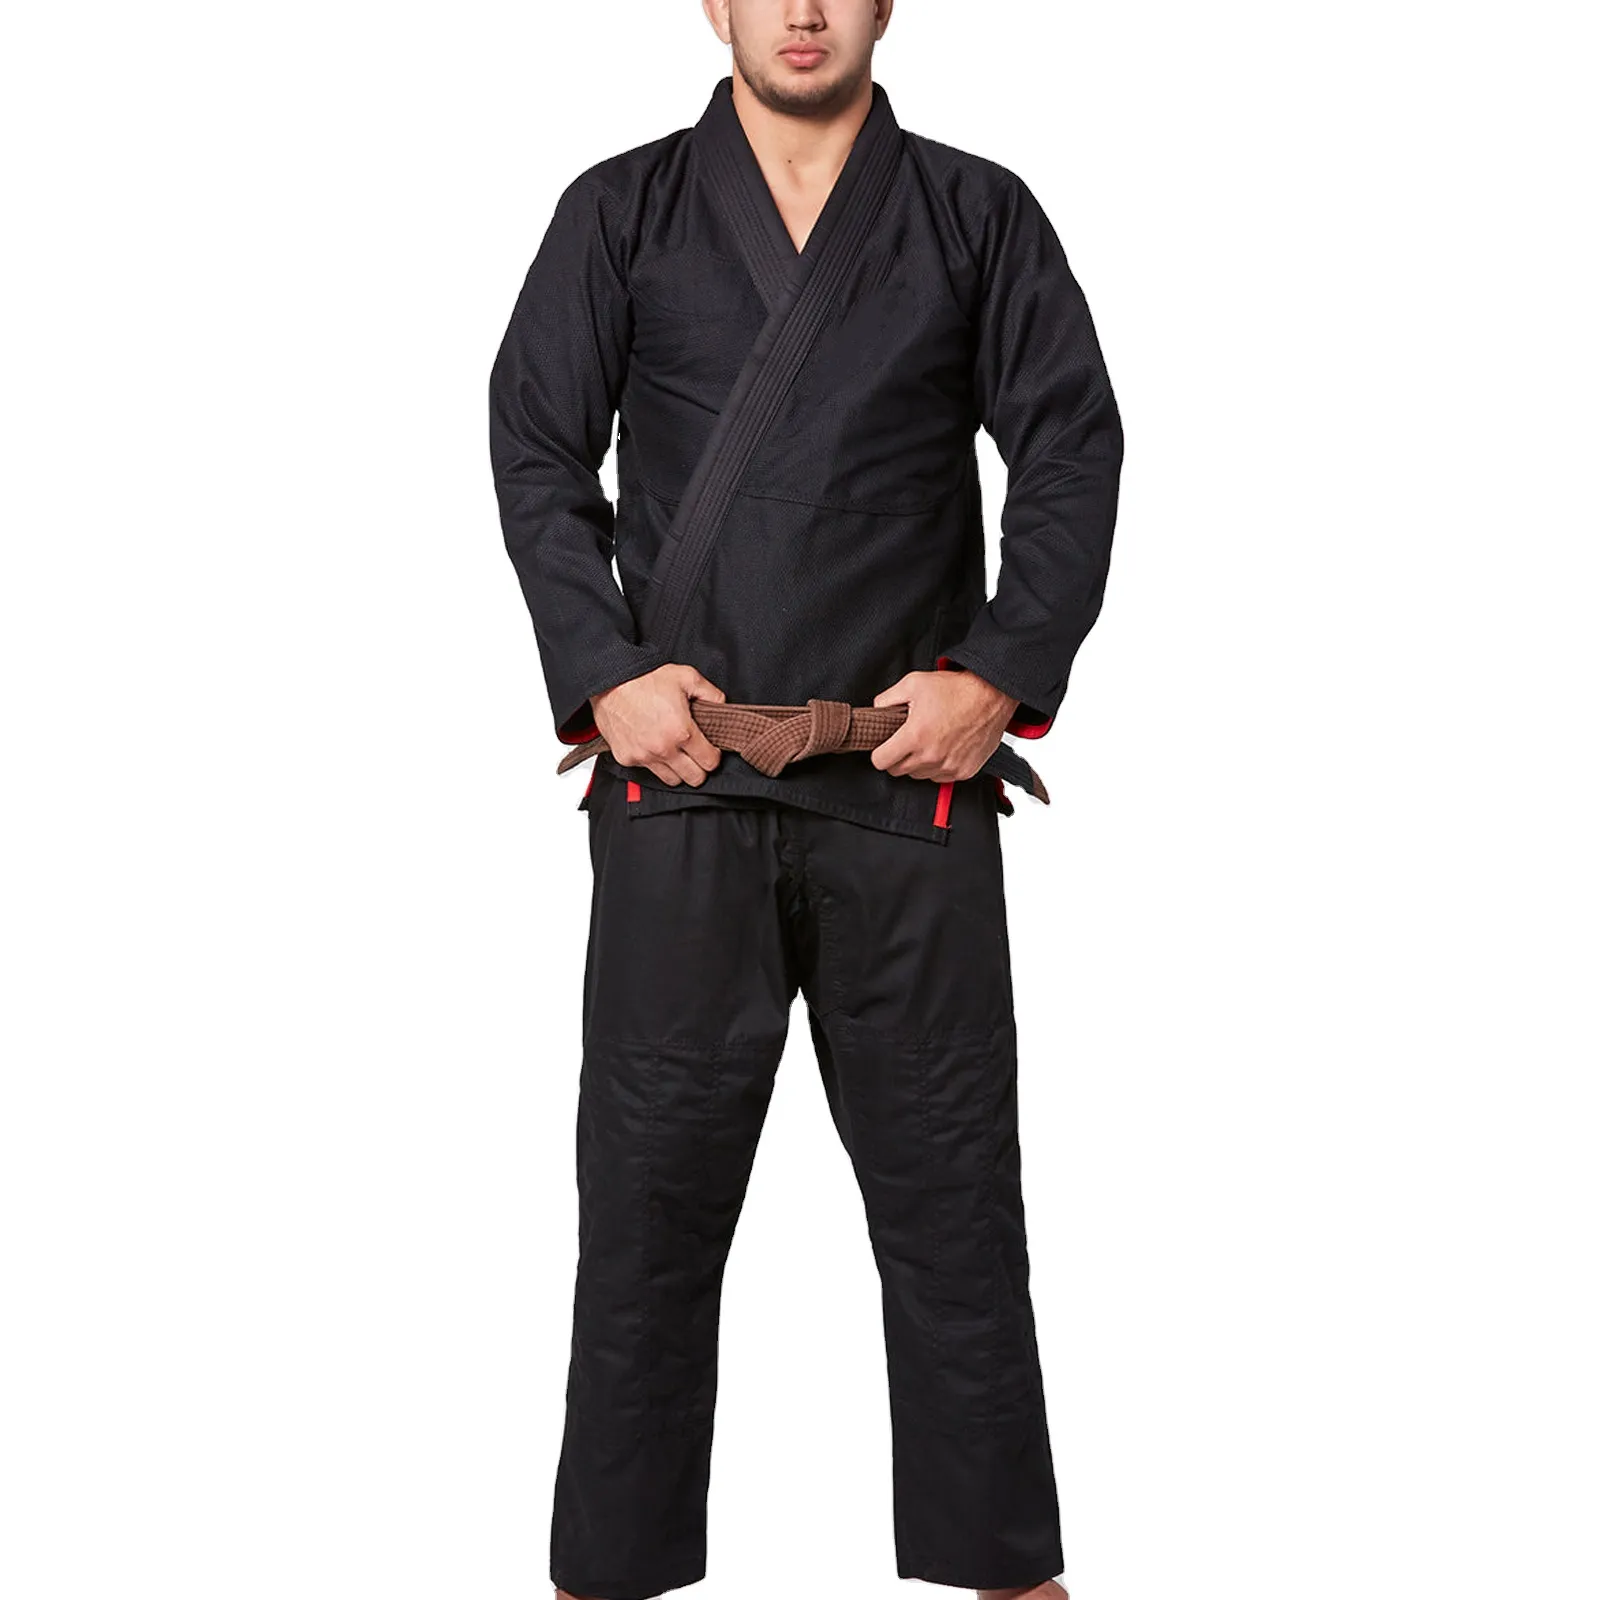 Top Style Schnellt rocknende Jiu Jitsu Uniform Hohe Qualität Erstellen Sie Ihr eigenes Design OEM Services Judo Uniform